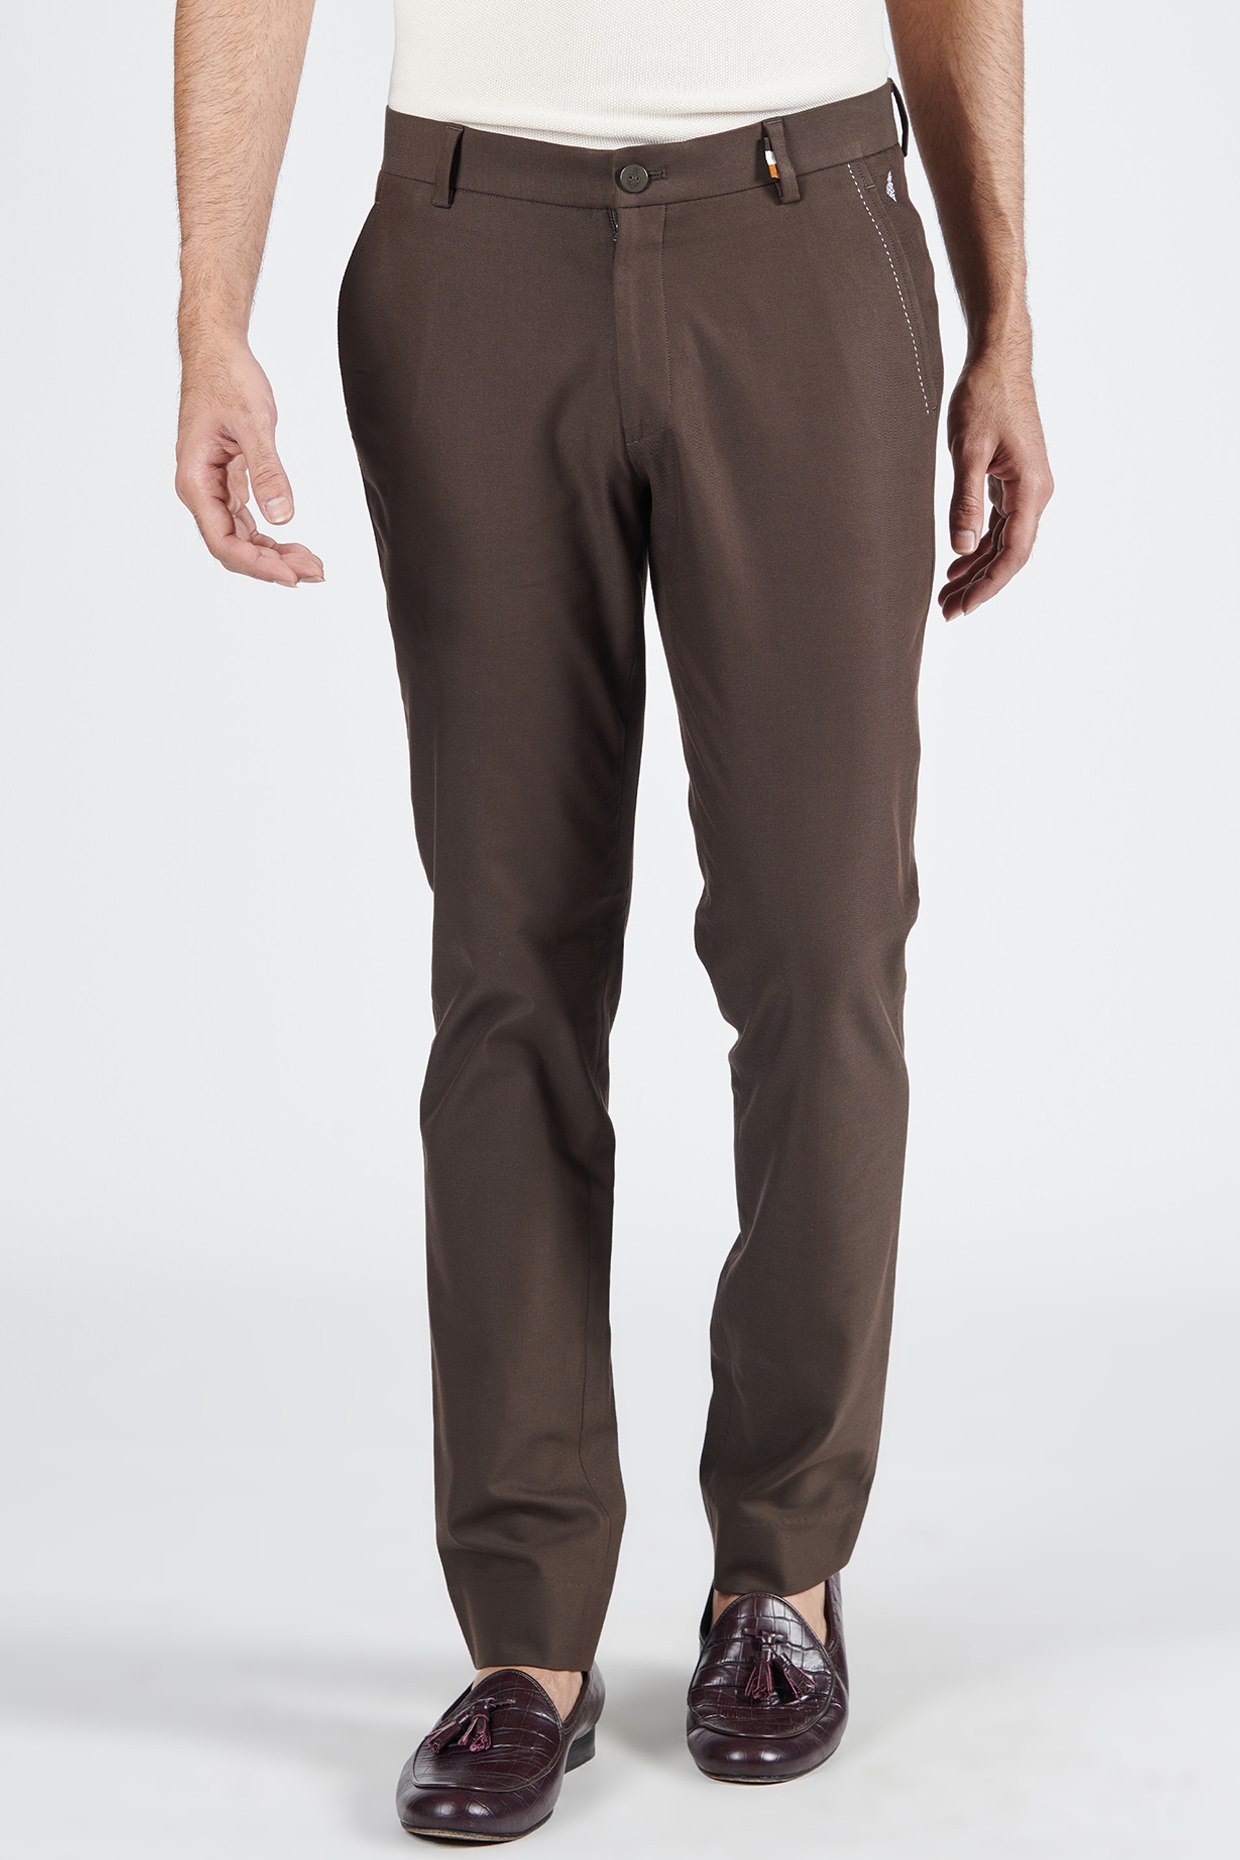 Crincle Pants in Dark Brown – CLYDE